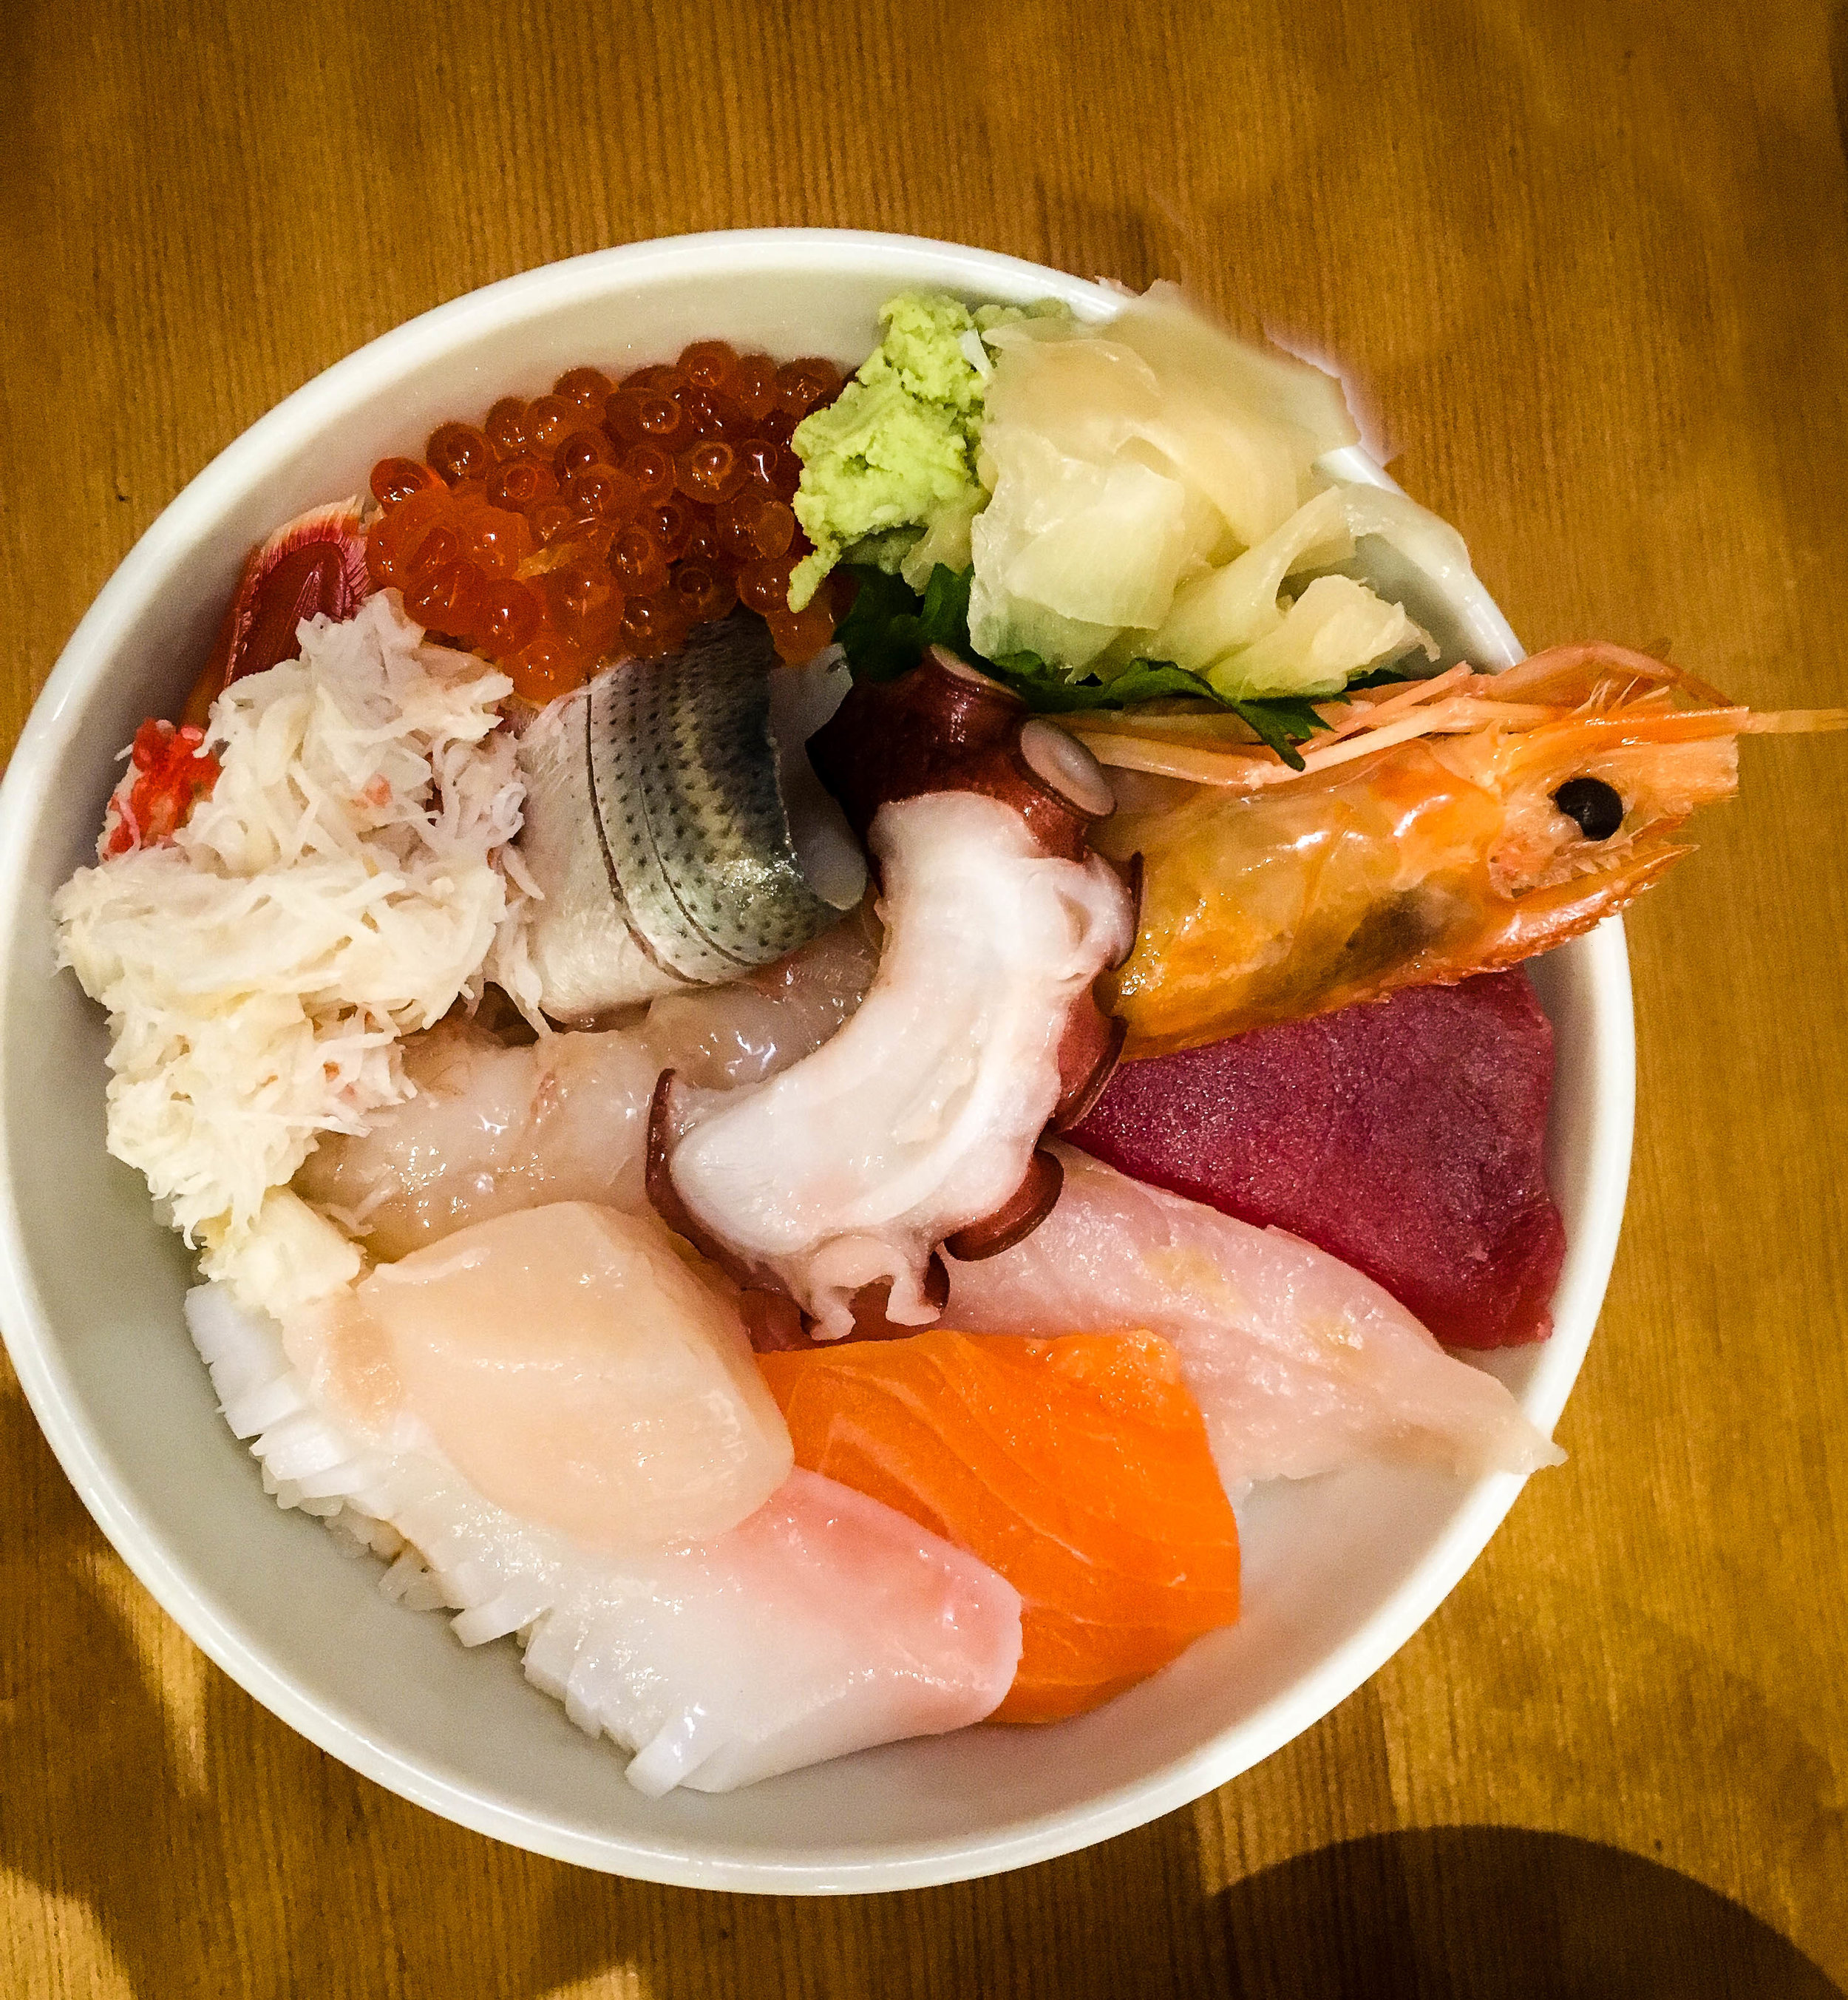 Breakfast at Tsukiji fish market. Part of Tokyo itinerary 7 days